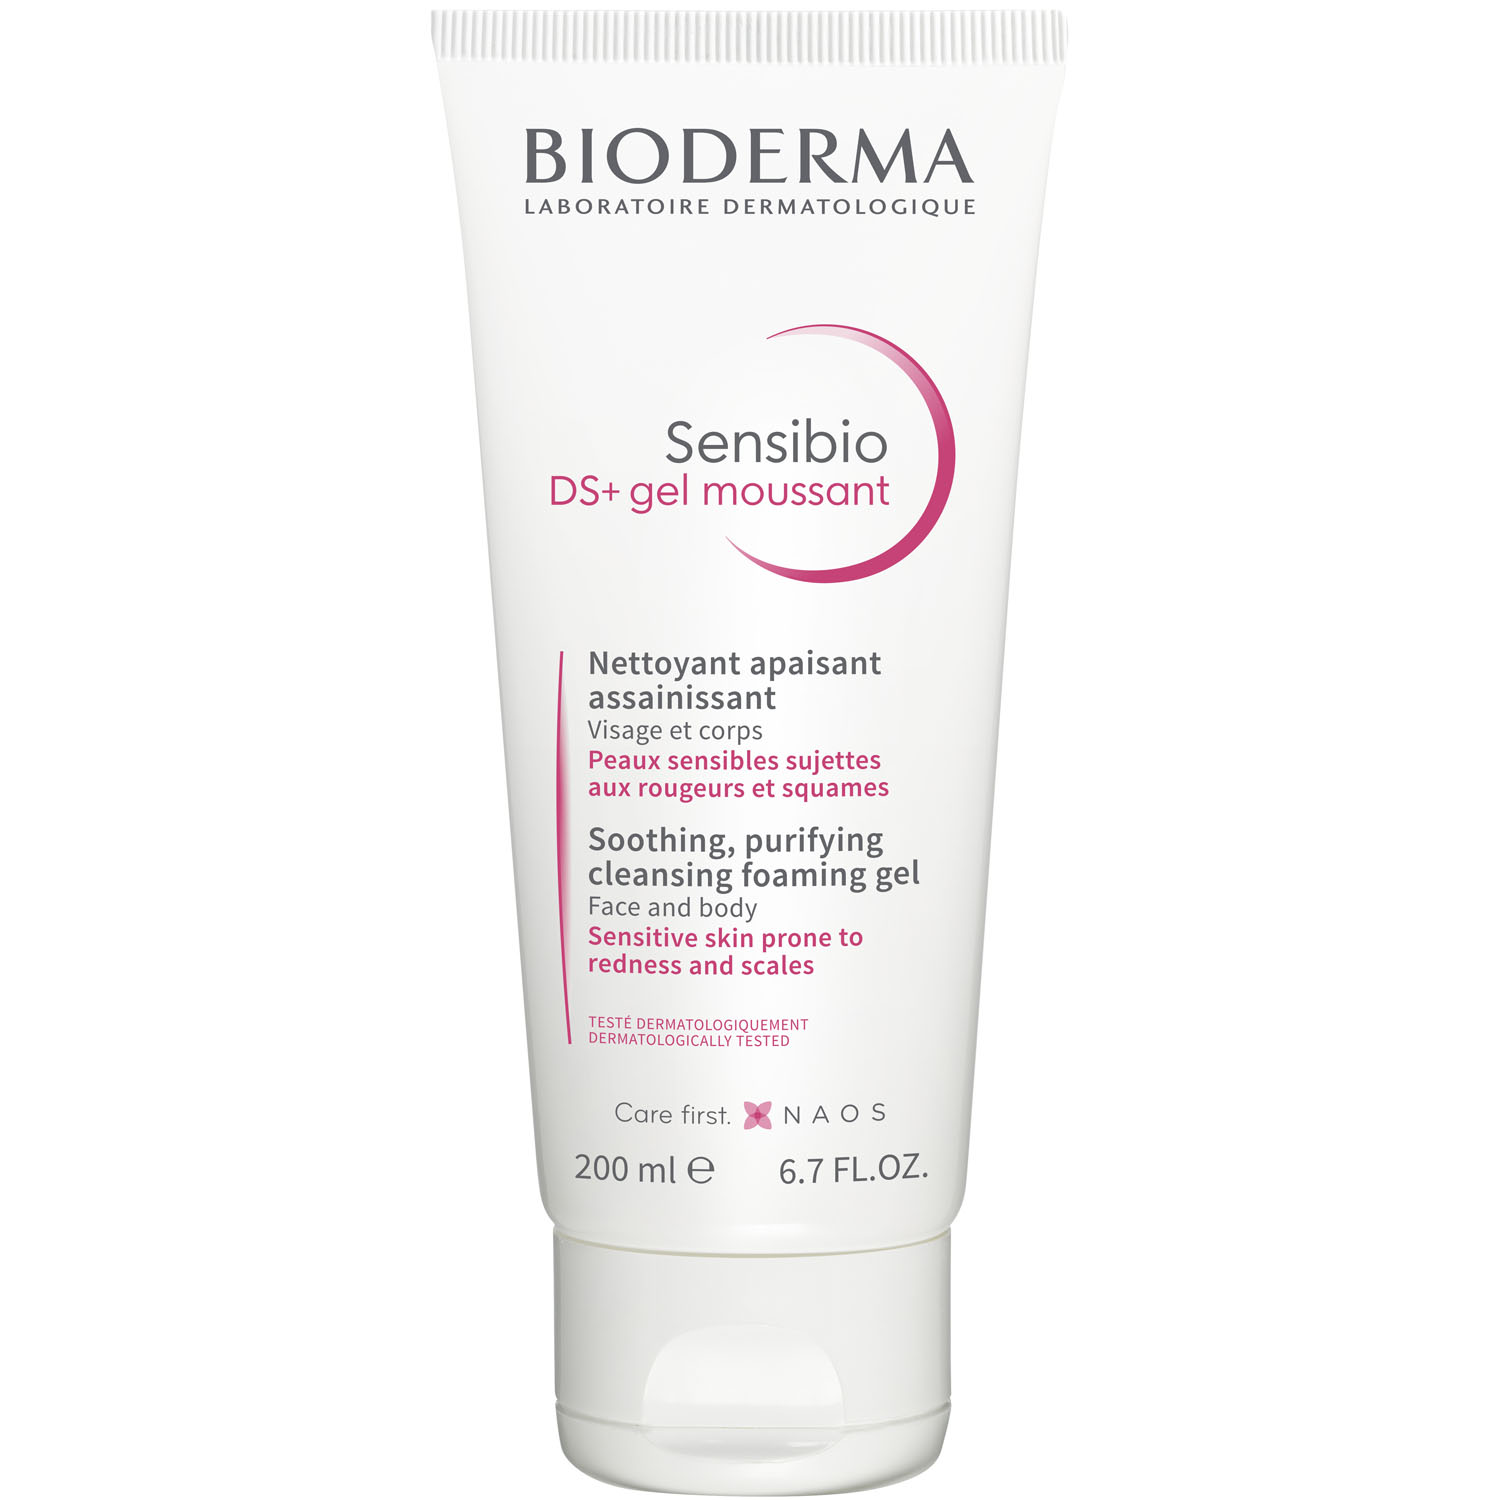 очищающий гель bioderma sensibio ds 200 мл Bioderma Очищающий гель для кожи с покраснениями и шелушениями DS+, 200 мл (Bioderma, Sensibio)